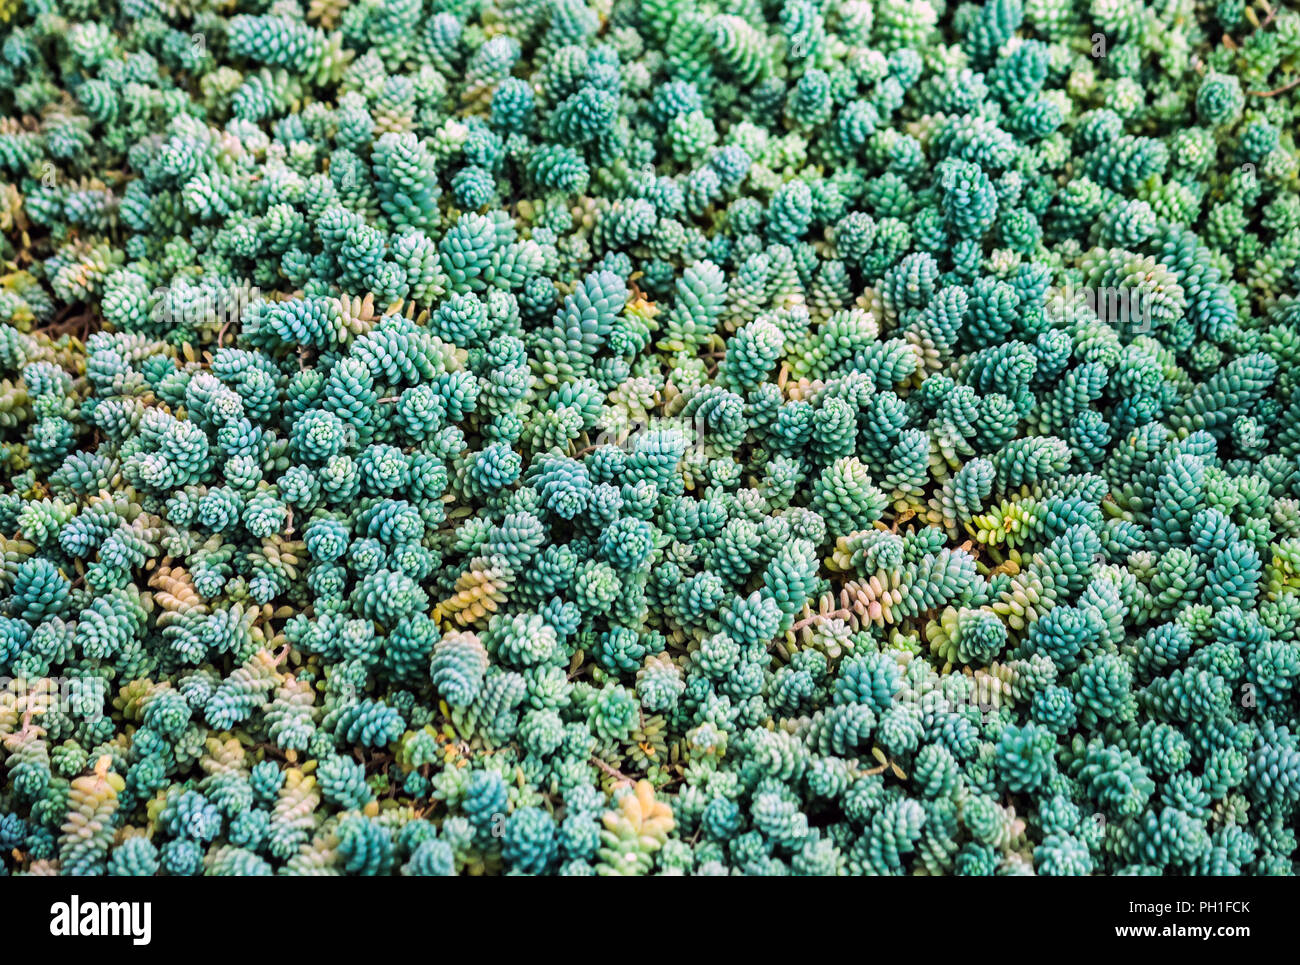 Viele kleine Graptopetalum Sukkulenten mit prallen Blüten sind blau, grün  und orange, Dünn und lang mit runden prallen Blätter der Pflanze  Stockfotografie - Alamy